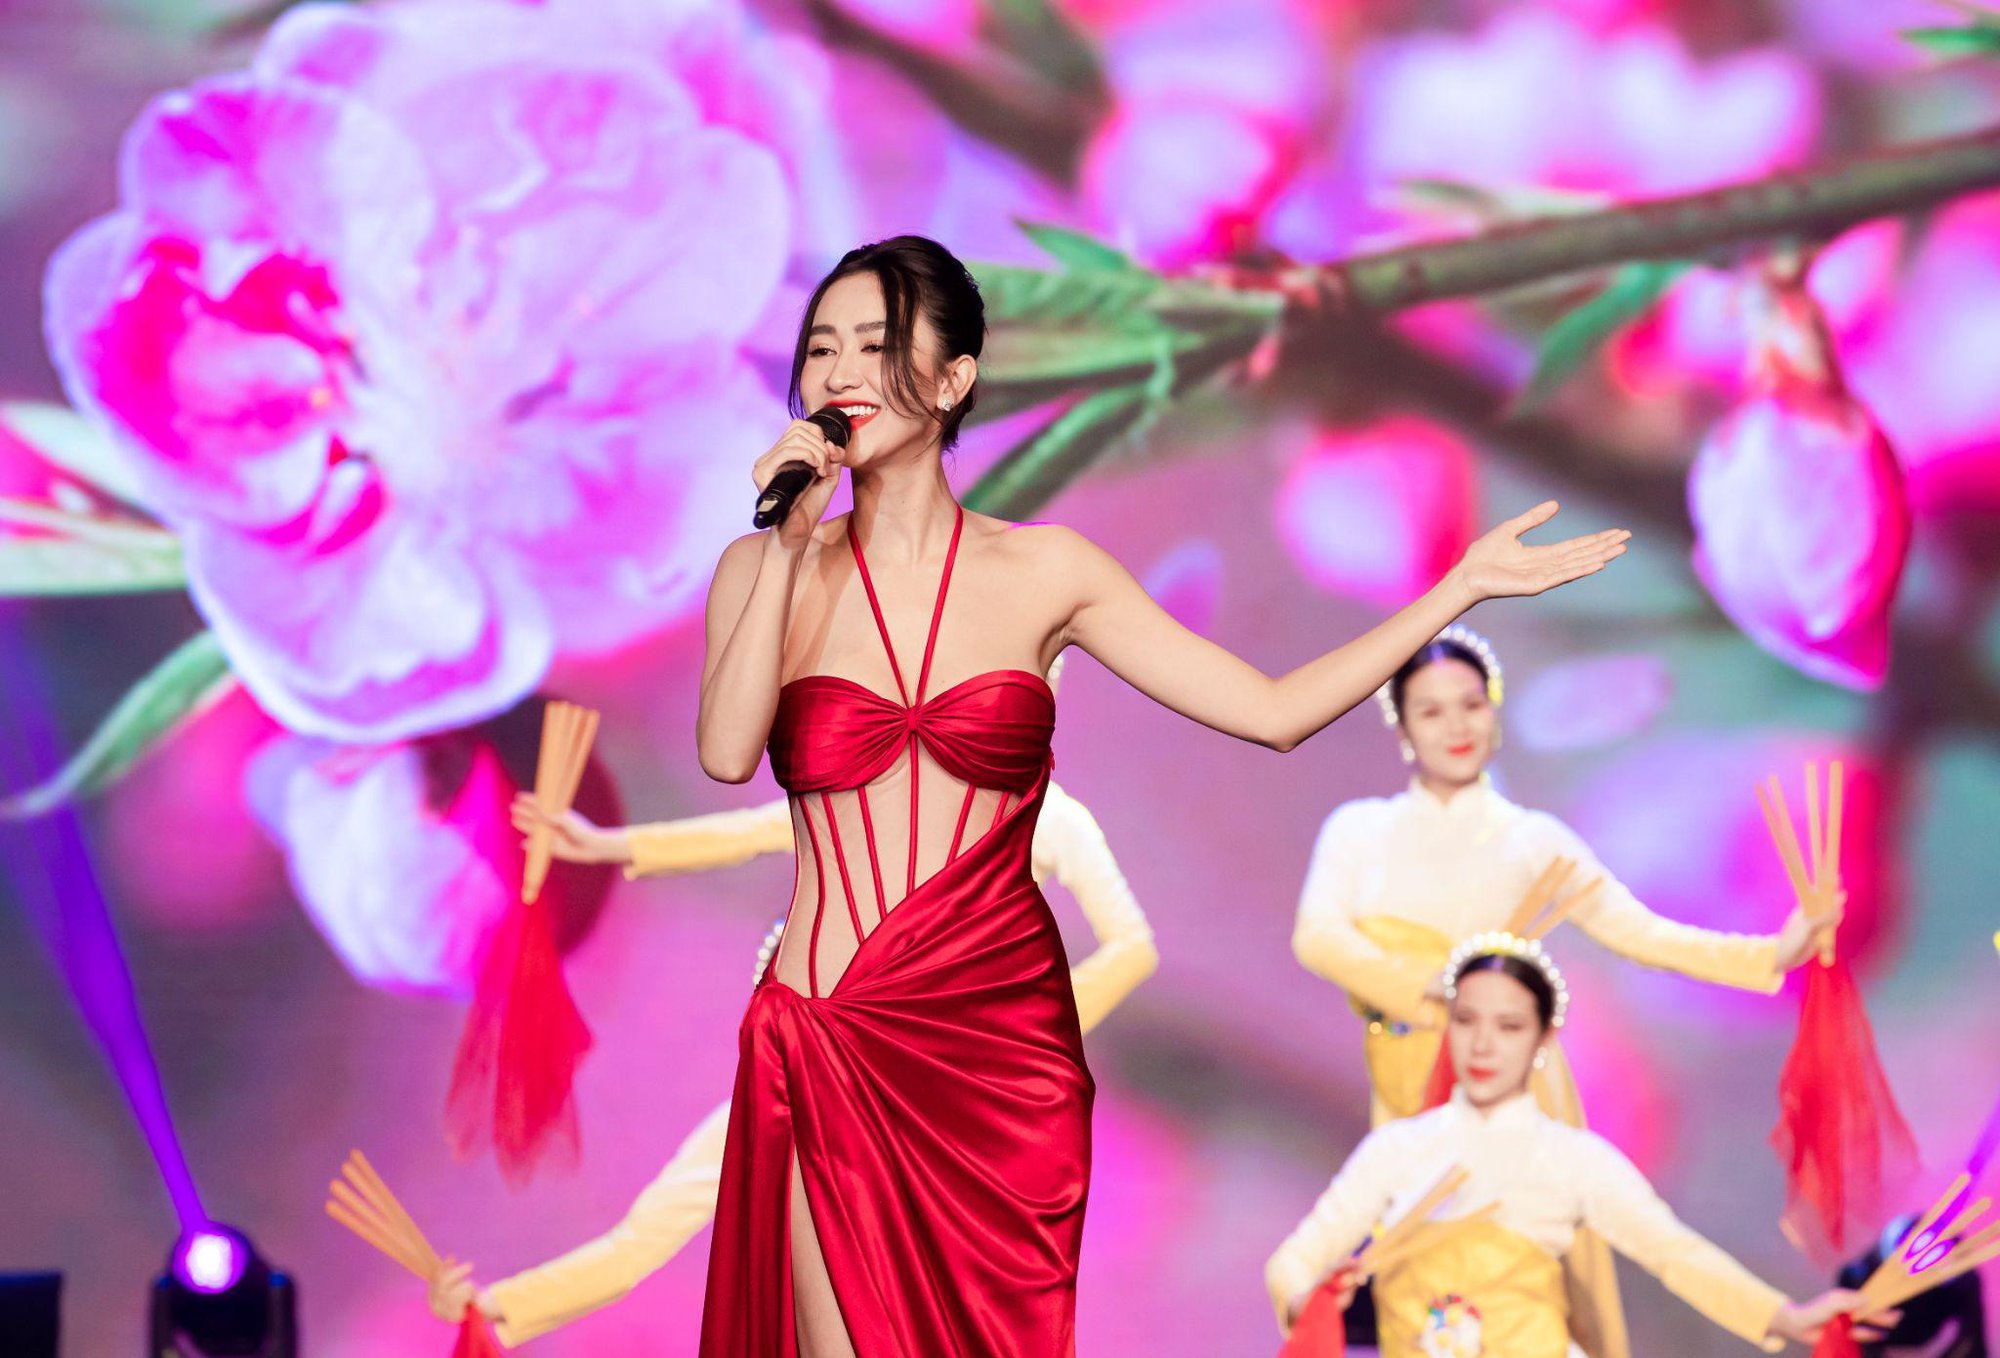 Á hậu Hà Thu khoe giọng hát ngọt lịm tim khiến nhiều người đẹp phải trầm trồ - Ảnh 1.